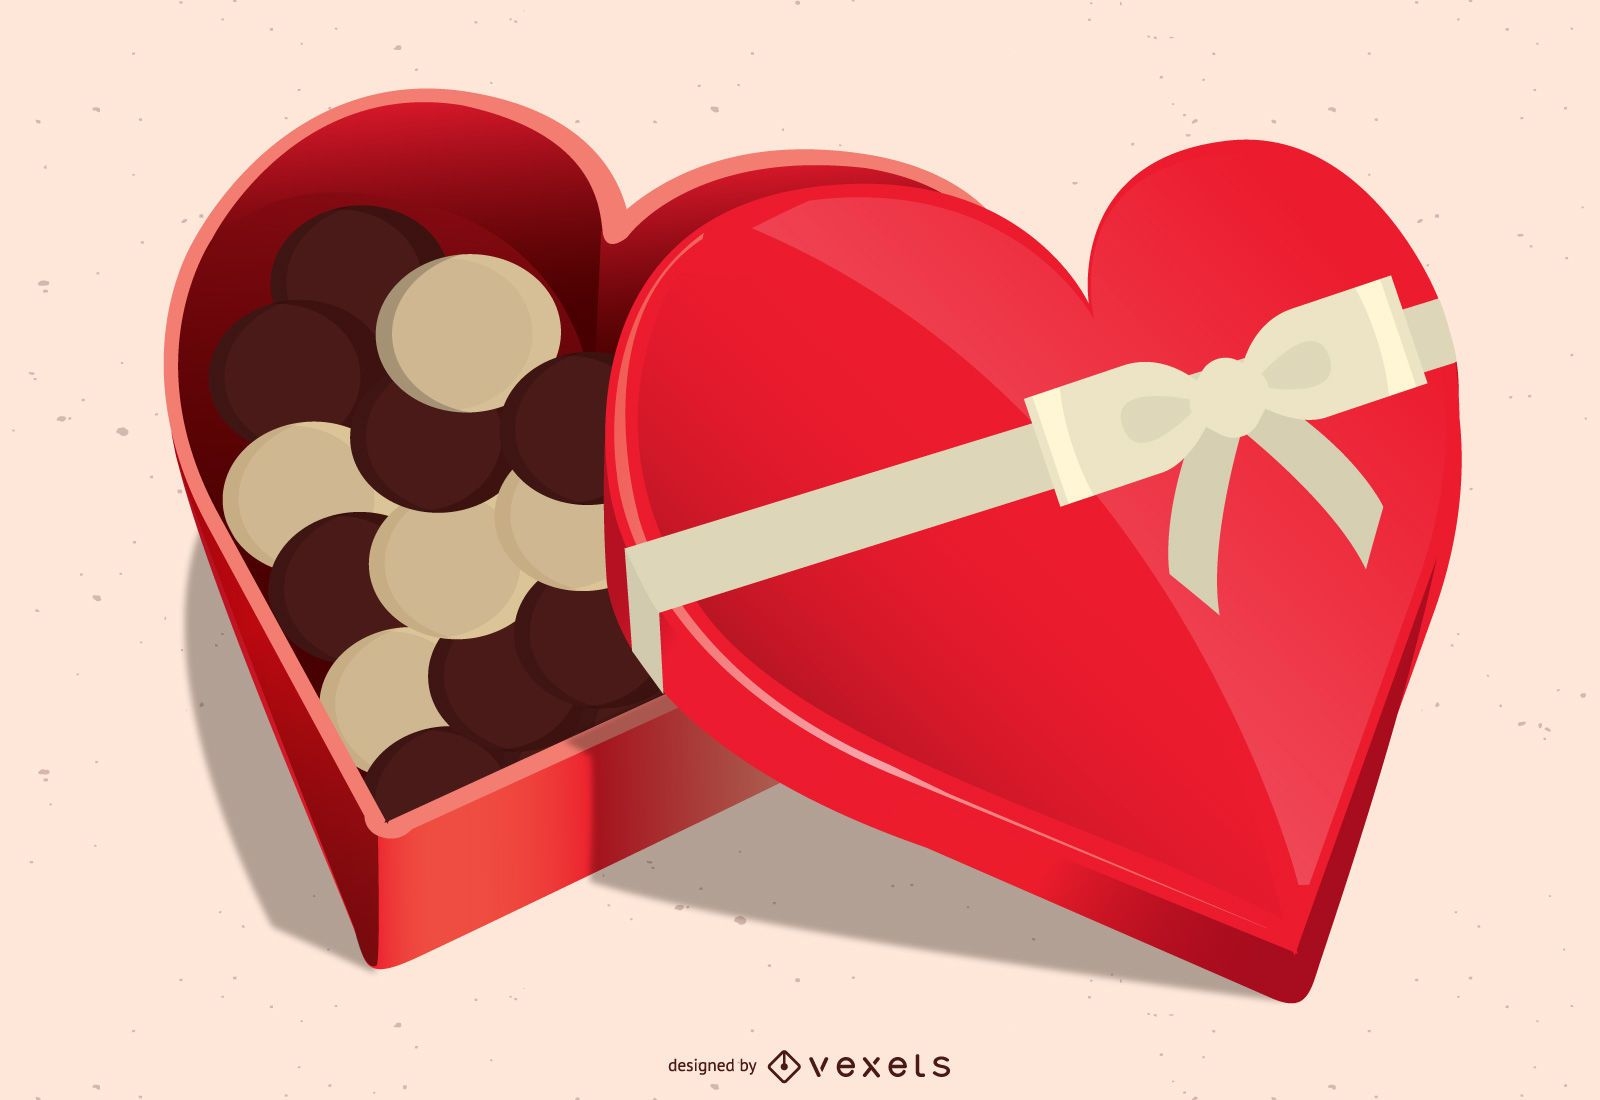 Descarga Vector De Diseño De Caja De Chocolate En Forma De Corazón